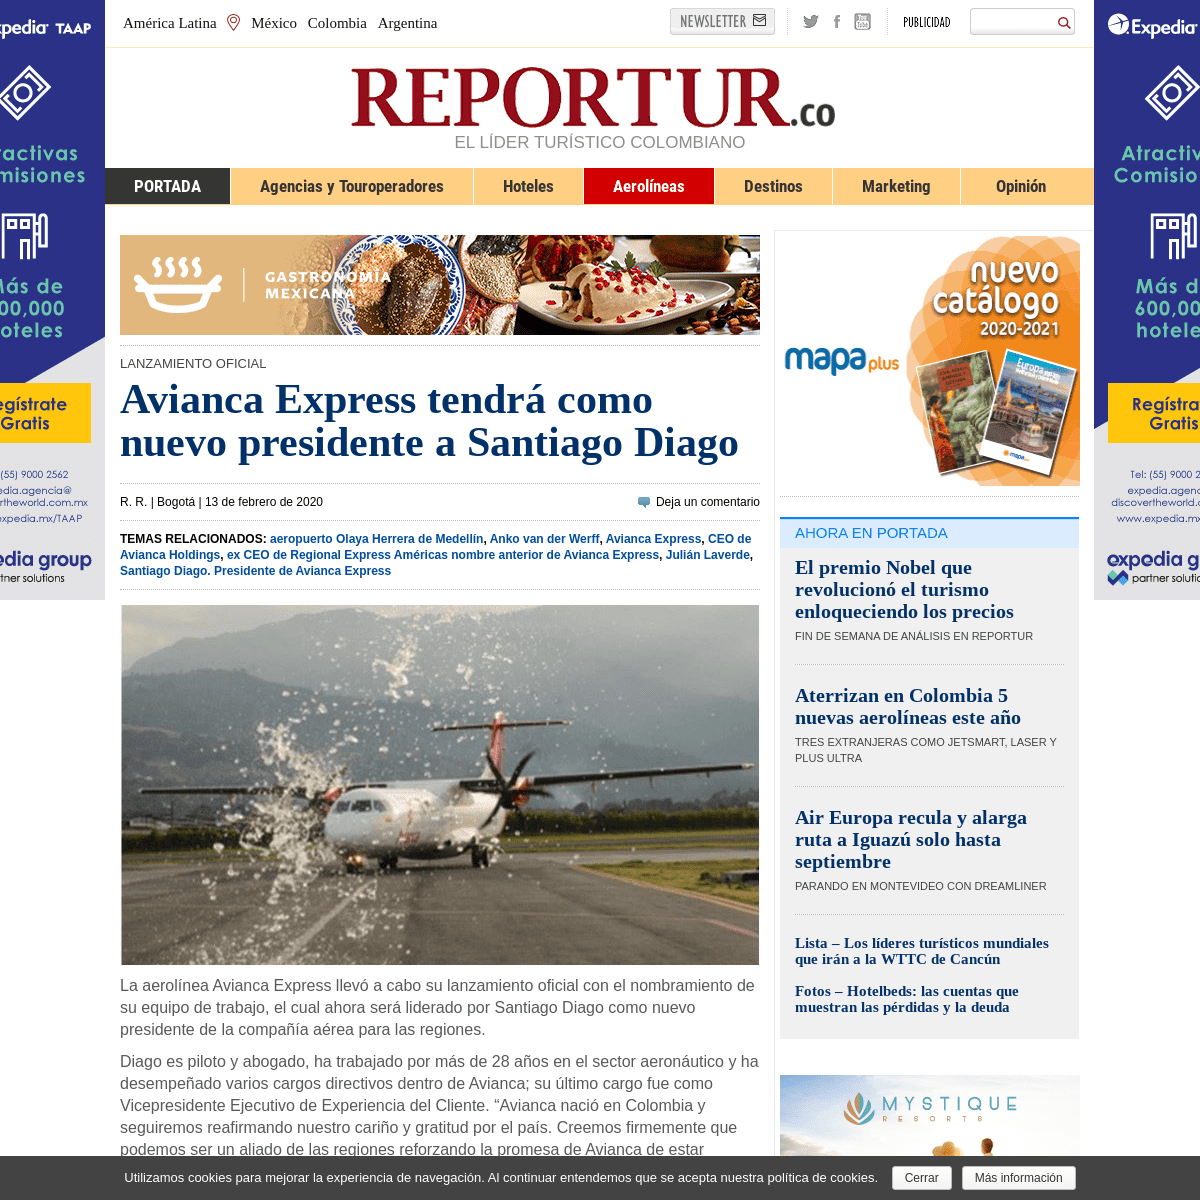 A complete backup of www.reportur.com/aerolineas/2020/02/13/avianca-express-tendra-nuevo-presidente-santiago-diago/